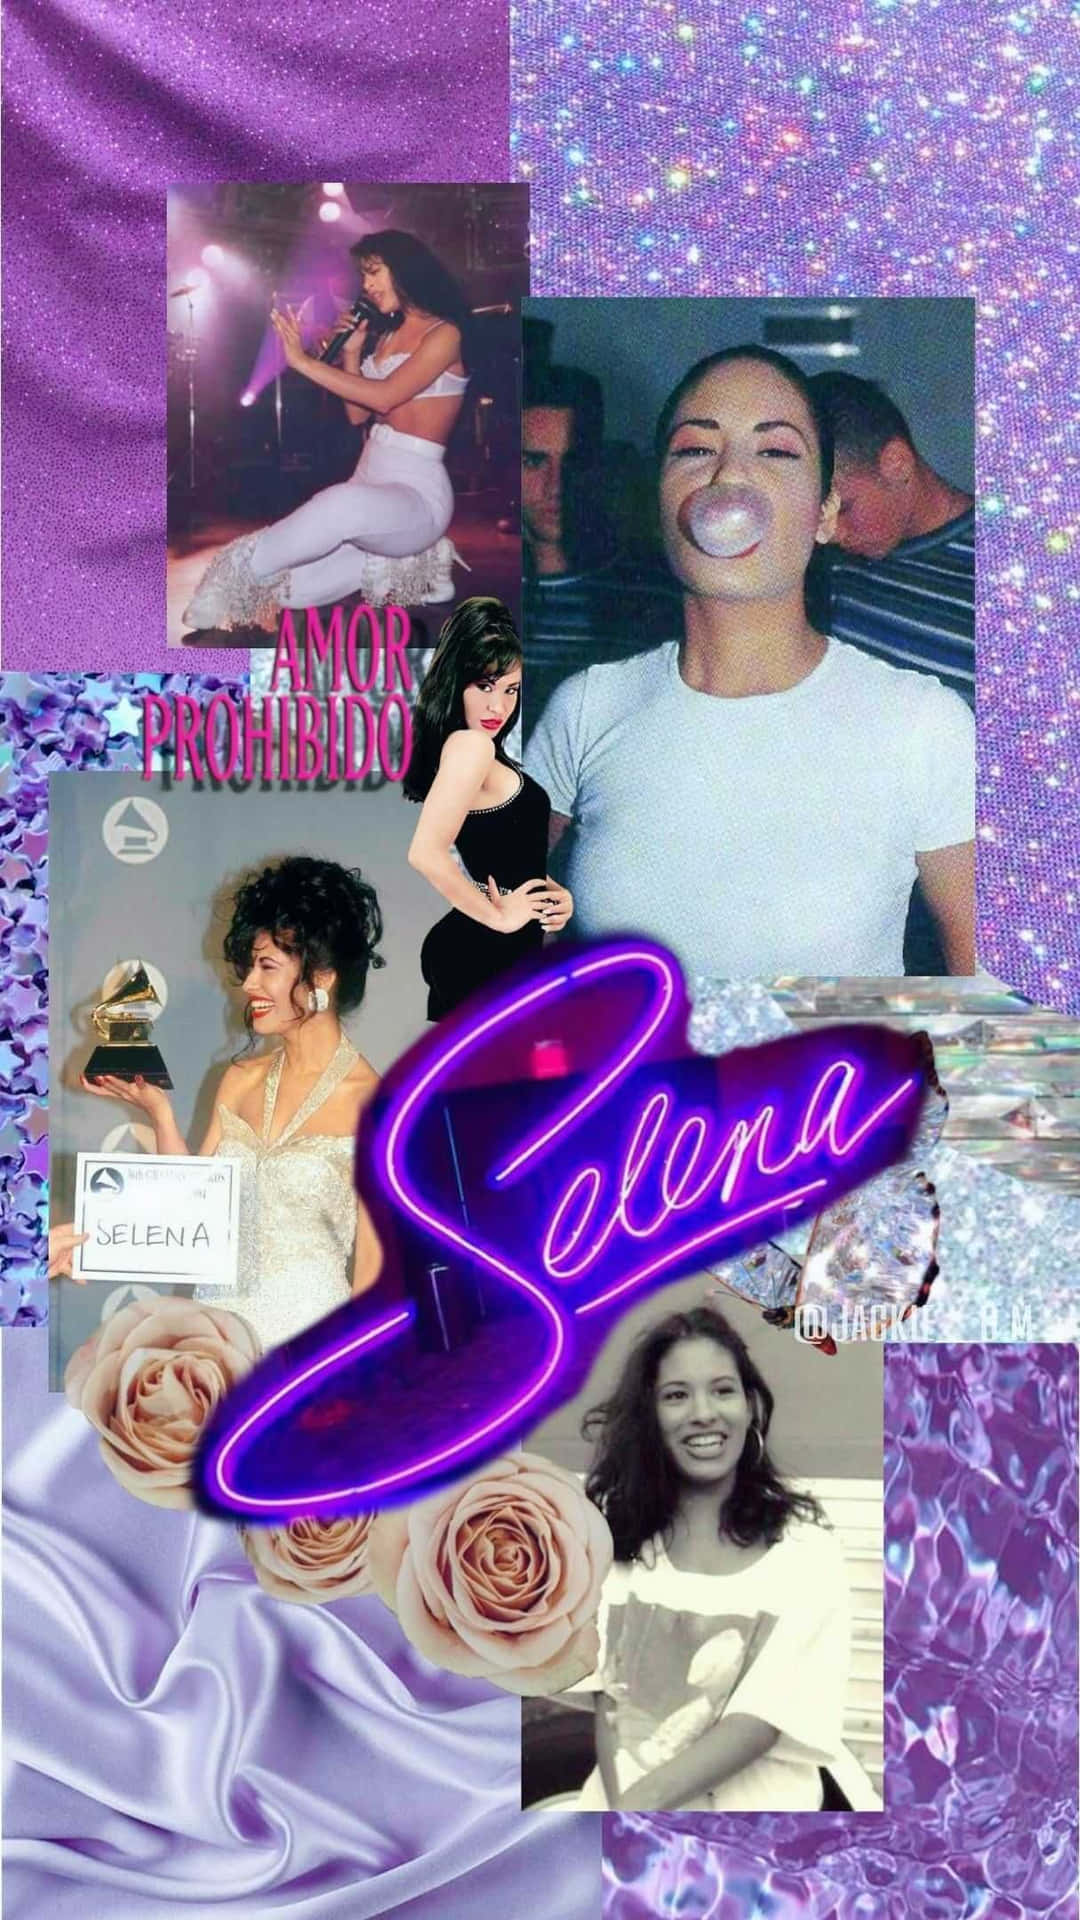 Skrytav Din Kärlek För Latinska Ikonen Selena Quintanilla Med Denna Stiliga Iphone-telefonbakgrund. Wallpaper